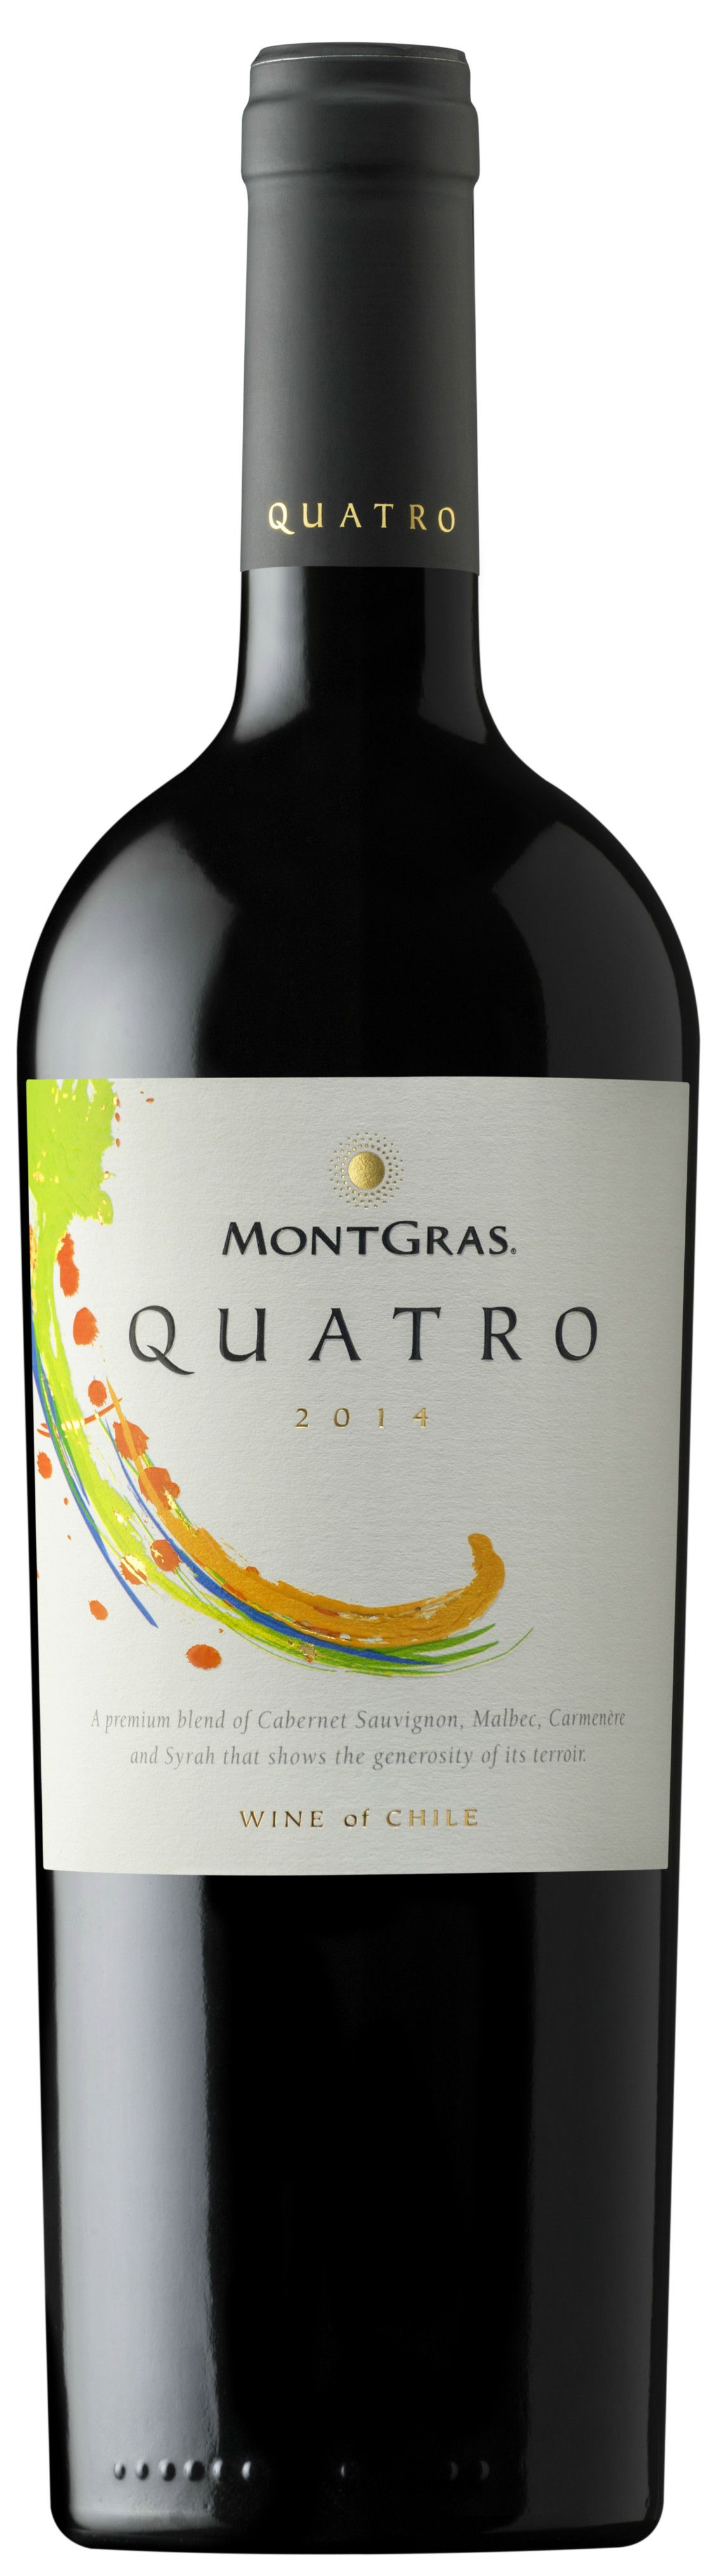 Montgras, Quatro, 2014